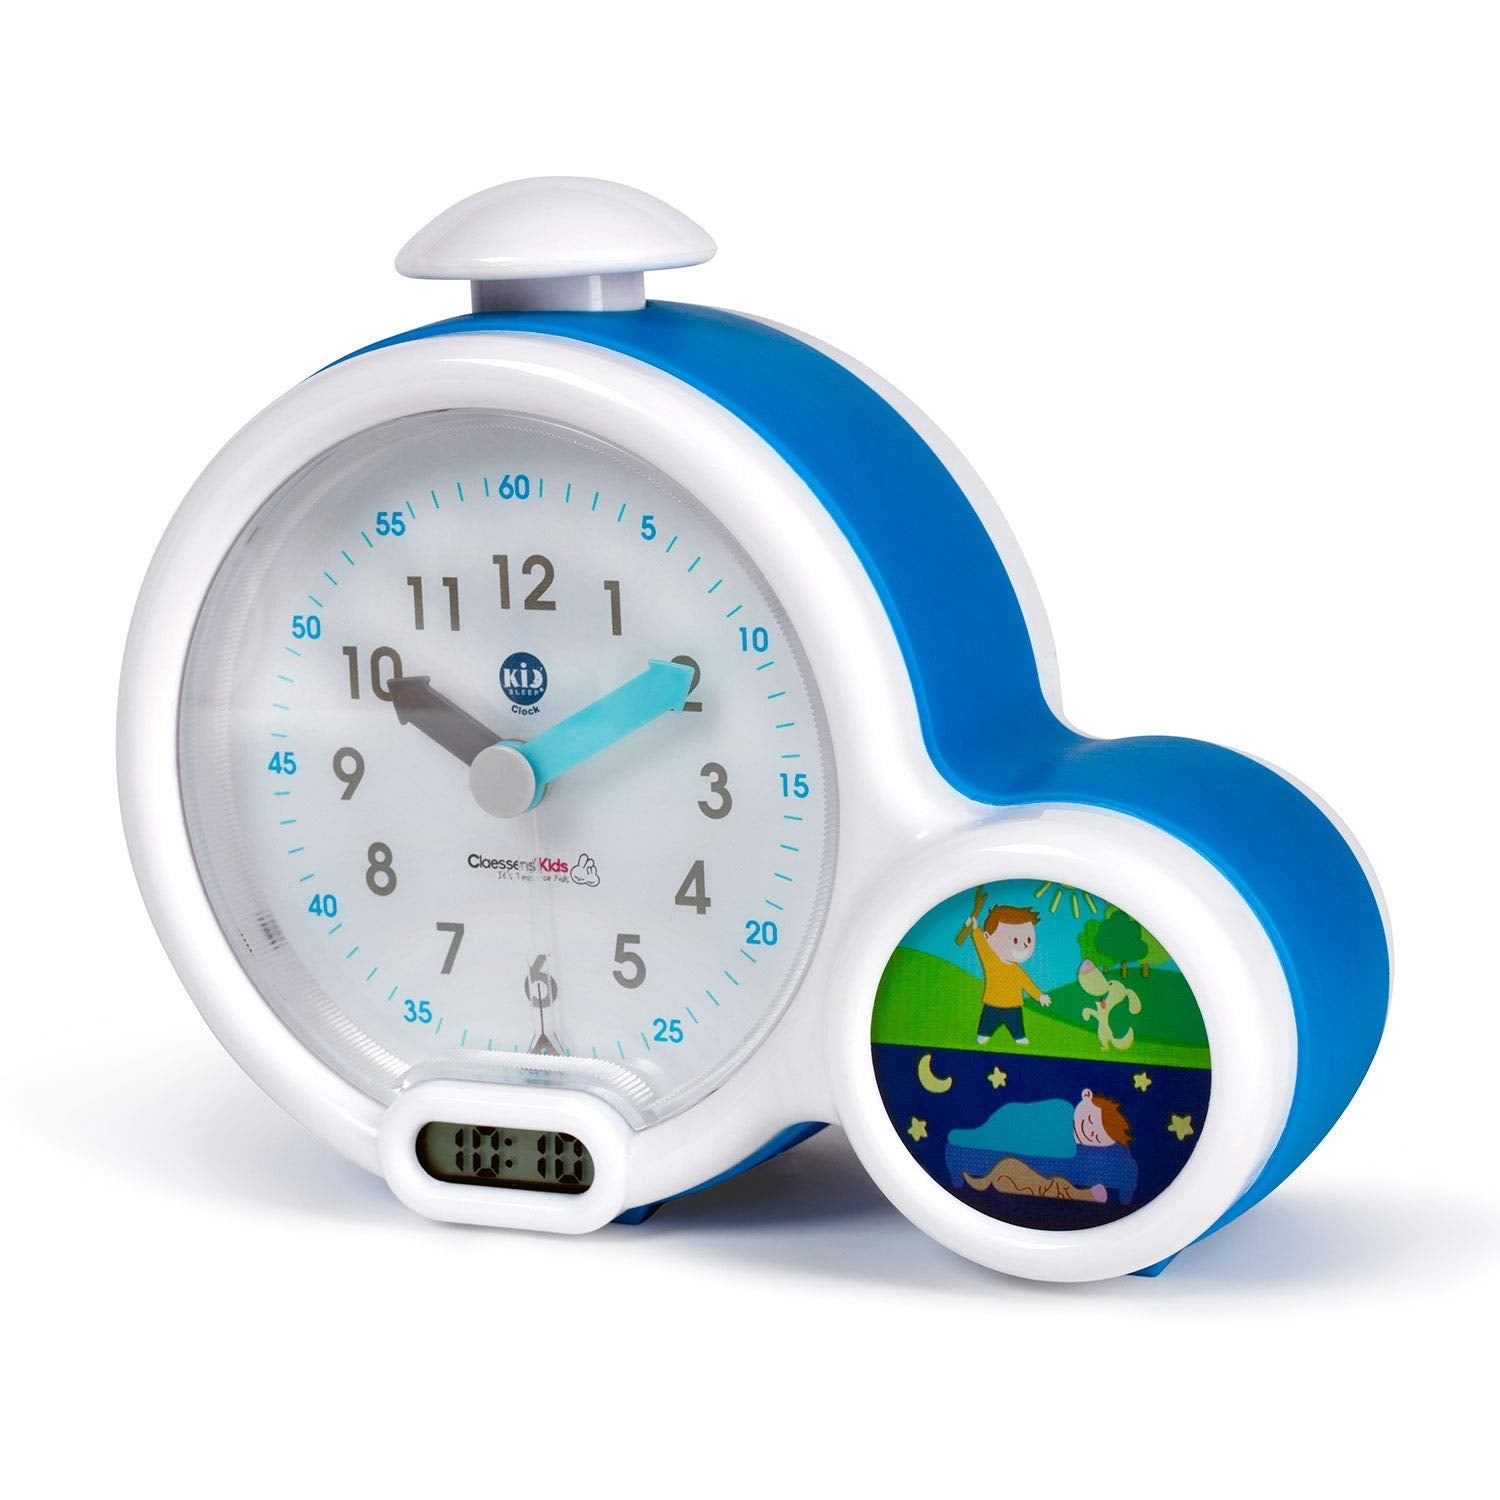 Claessens' Kid - Clock - Réveil Enfant Educatif Jour/Nuit Lumineux - Double Affichage et 3 Alarmes au choix - Fonctionne Sur Secteur ou à Piles - Bleu